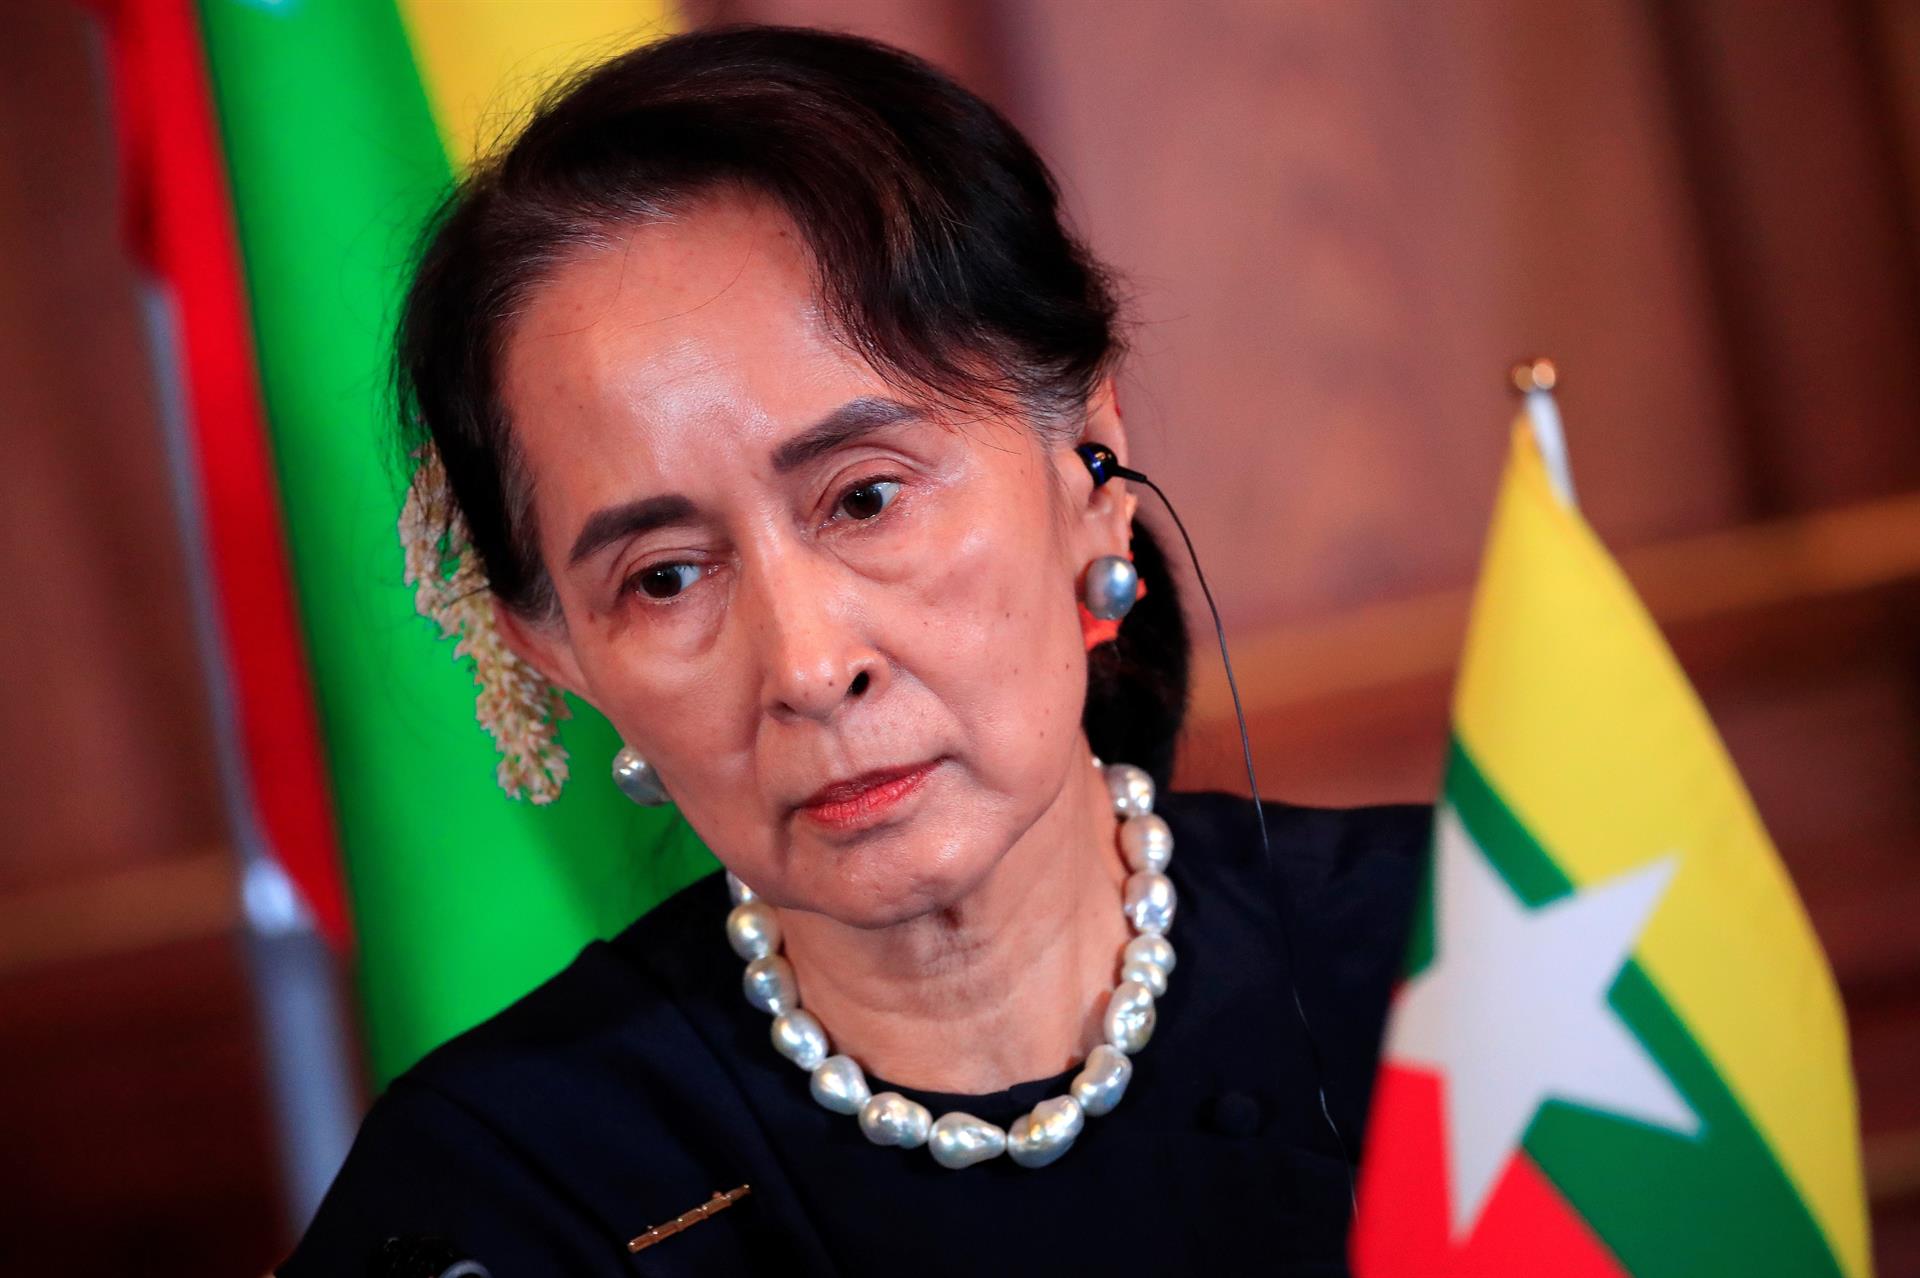 La nobel de la paz Suu Kyi, condenada a dos años de prisión en Birmania